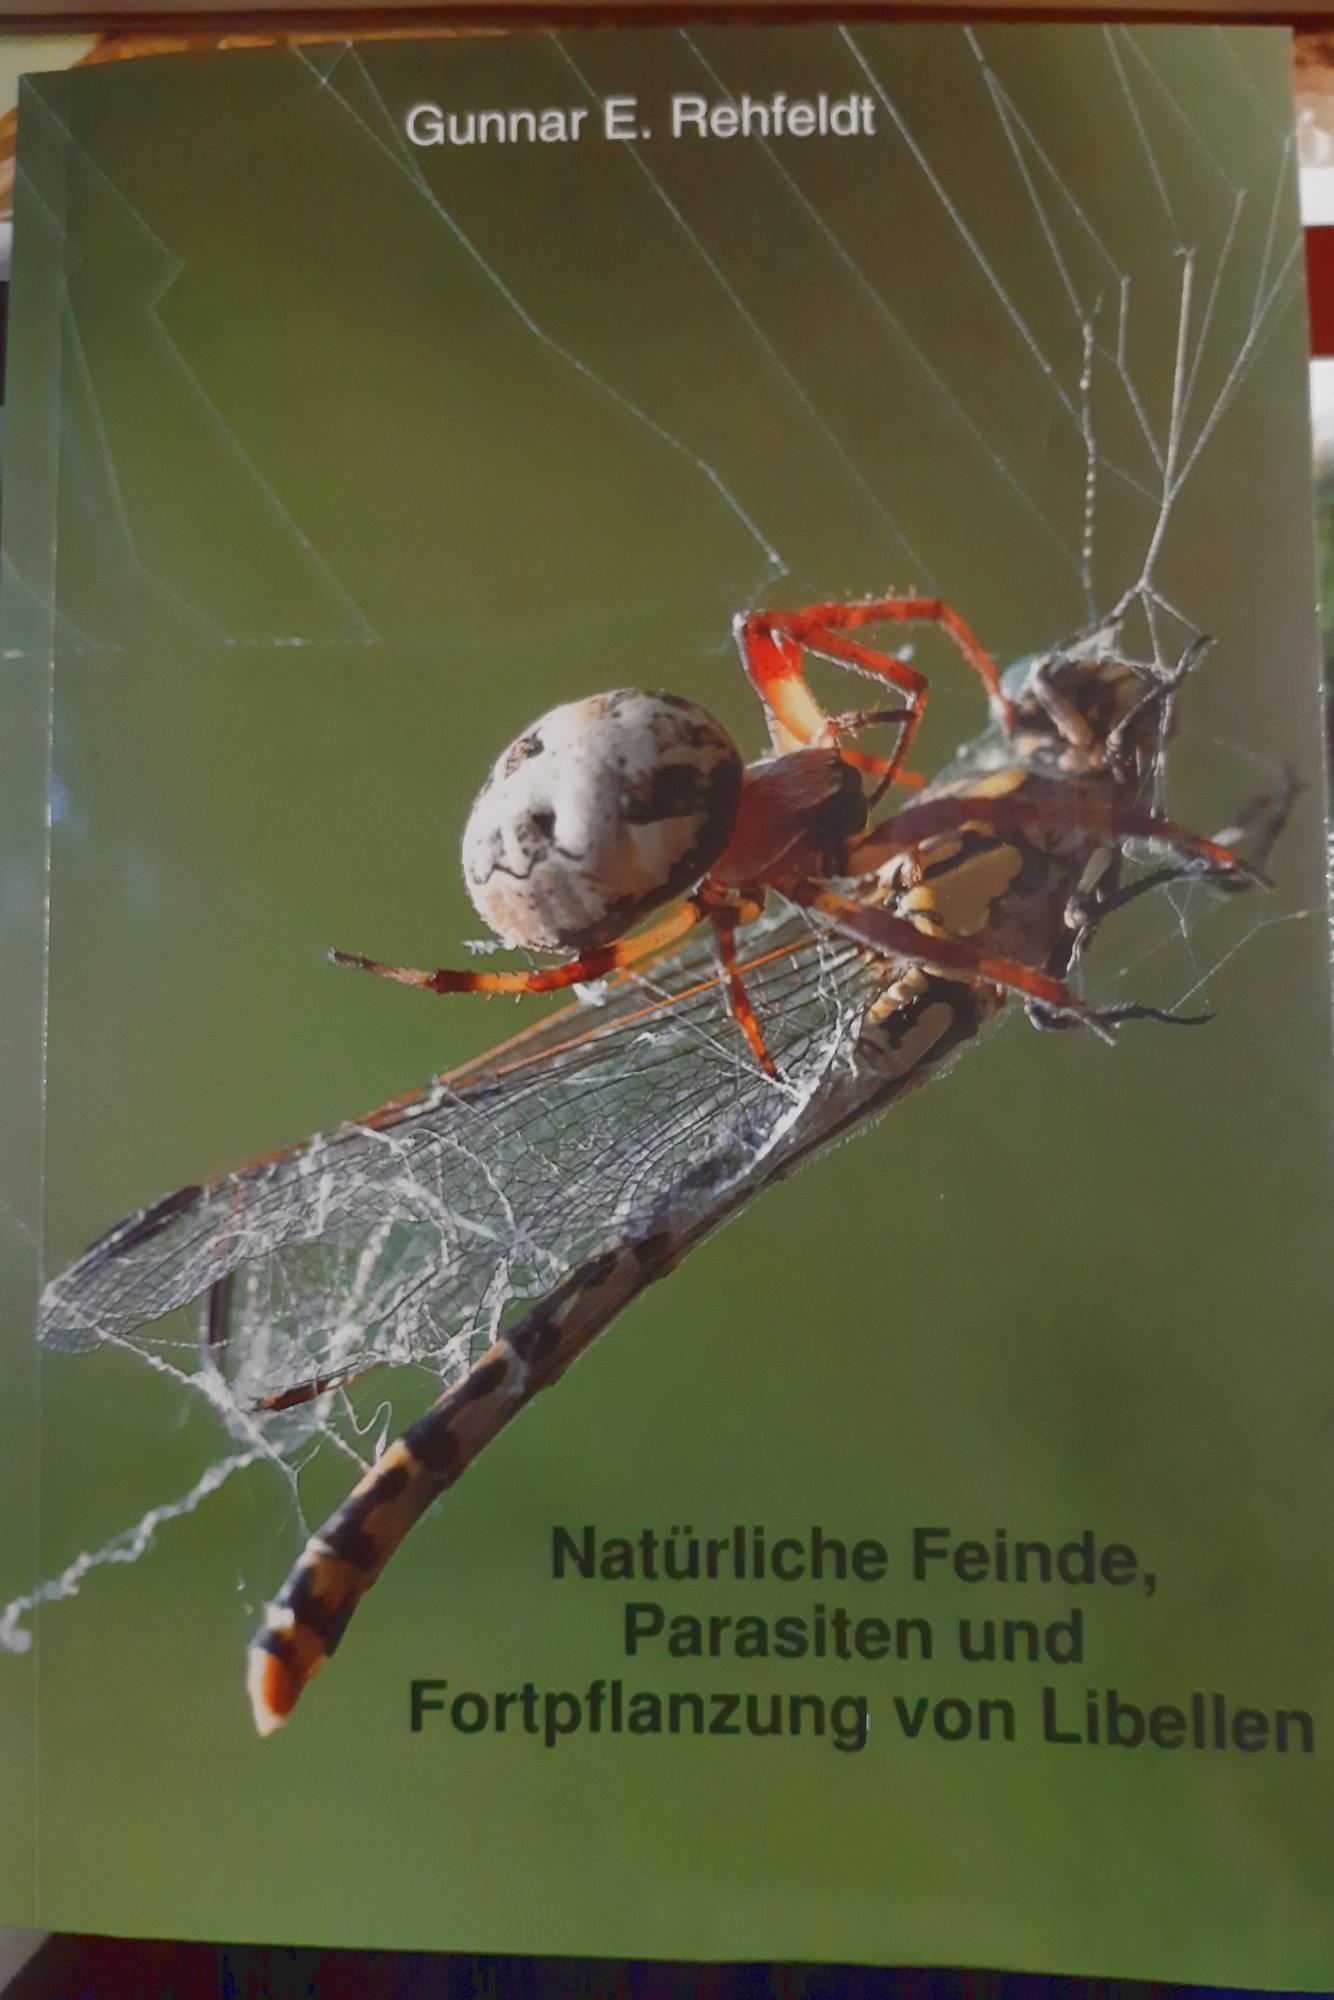 Gunnar E. Rehfeldt: Natürliche Feinde, Parasiten und Fortpflanzung von Libellen (Rippl-Rónai Múzeum CC BY-NC-ND)